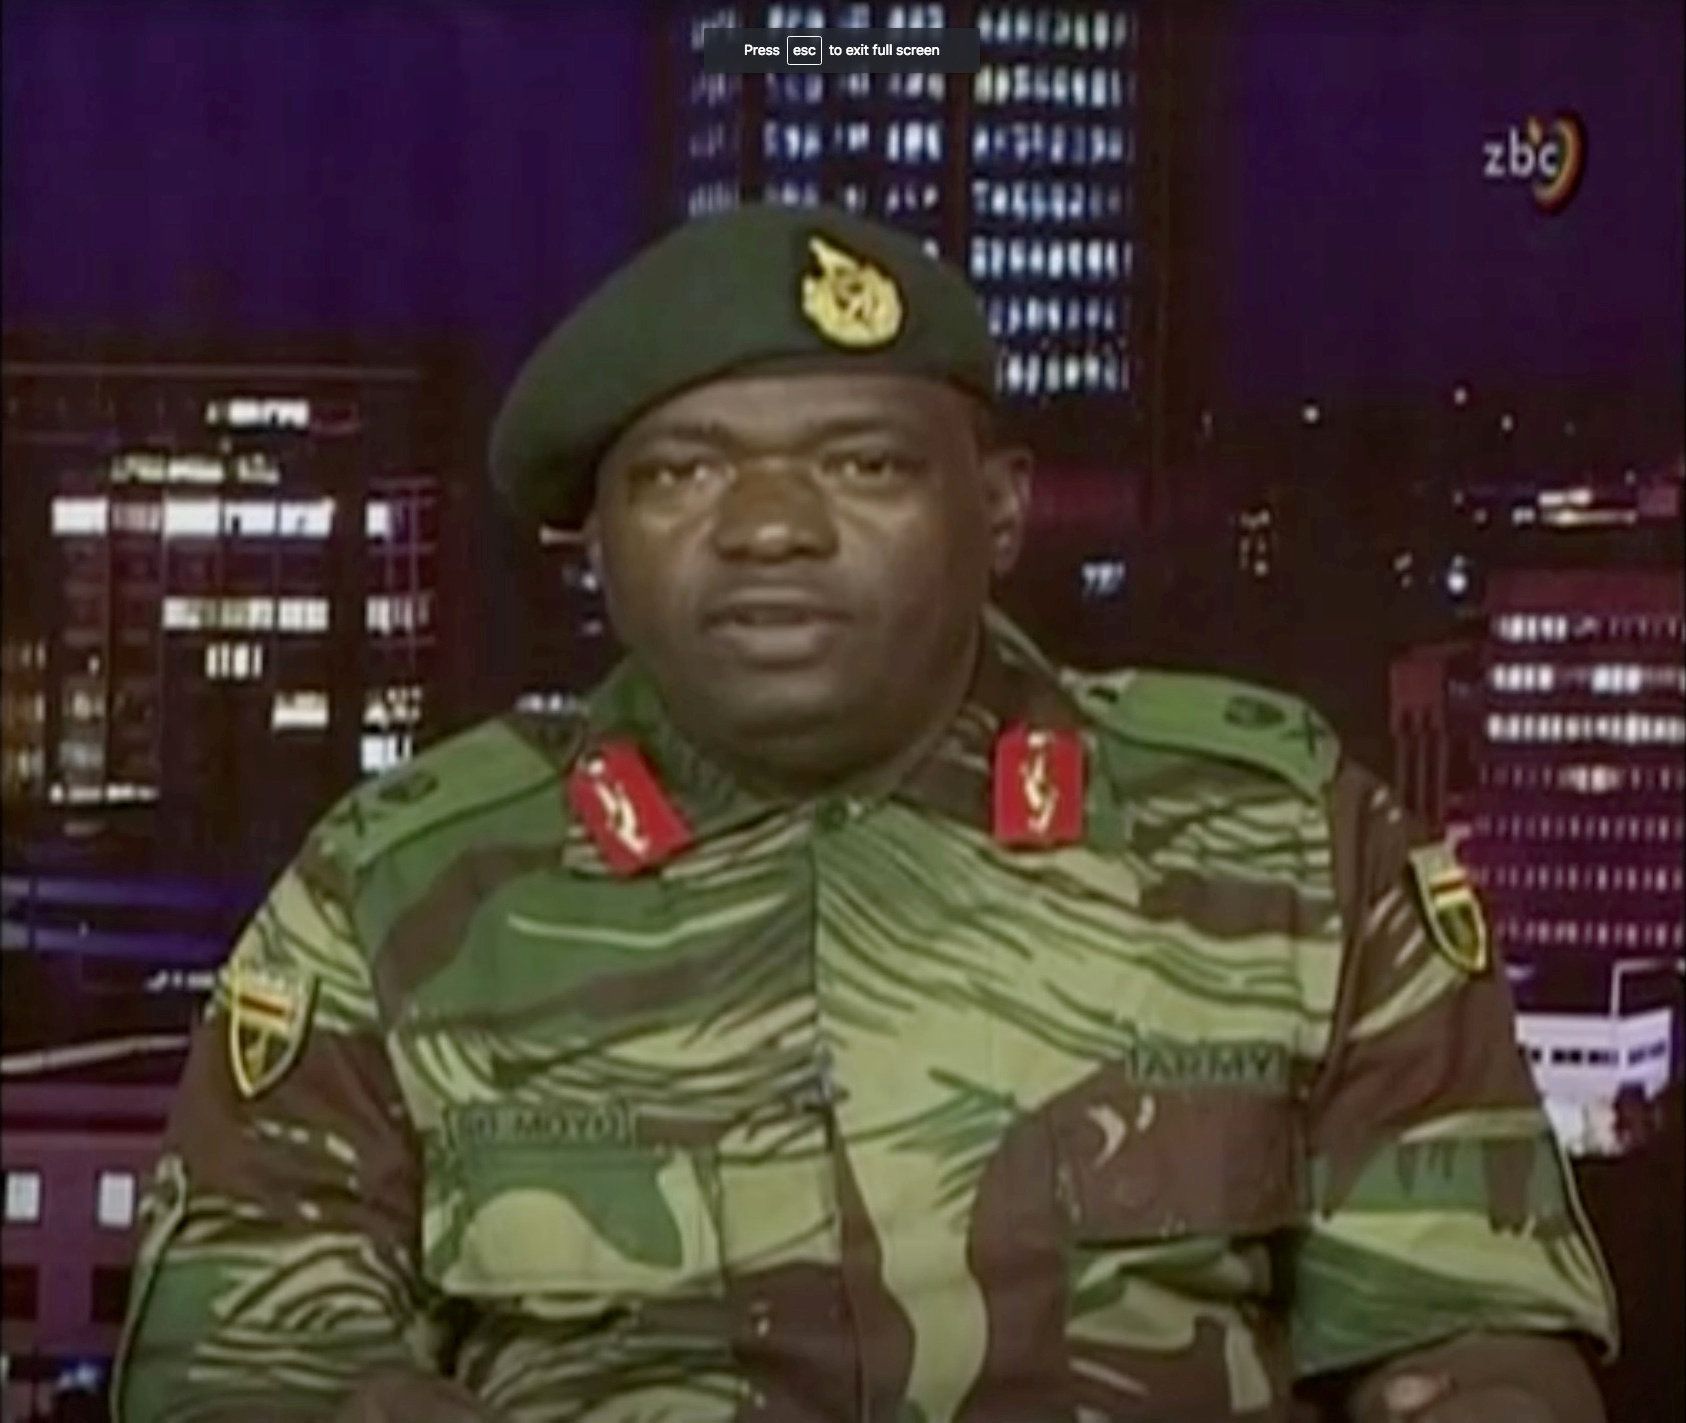 Zástupce armády SB Moyo oznamuje v televizi převrat.